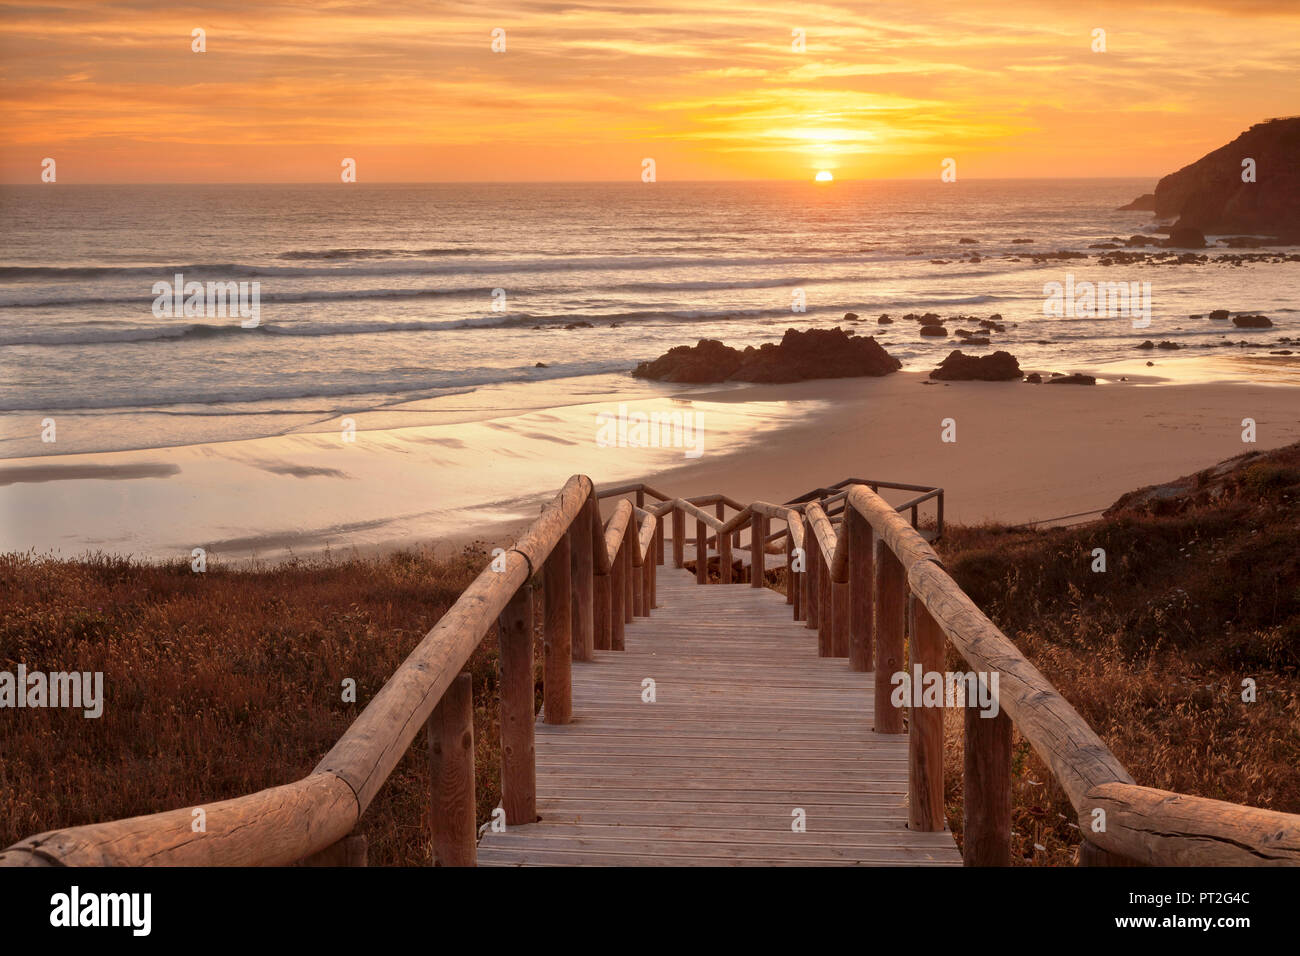 Praia do Amado beach, Carrapateira, Costa Vicentina, west coast, Algarve, Portugal Stock Photo